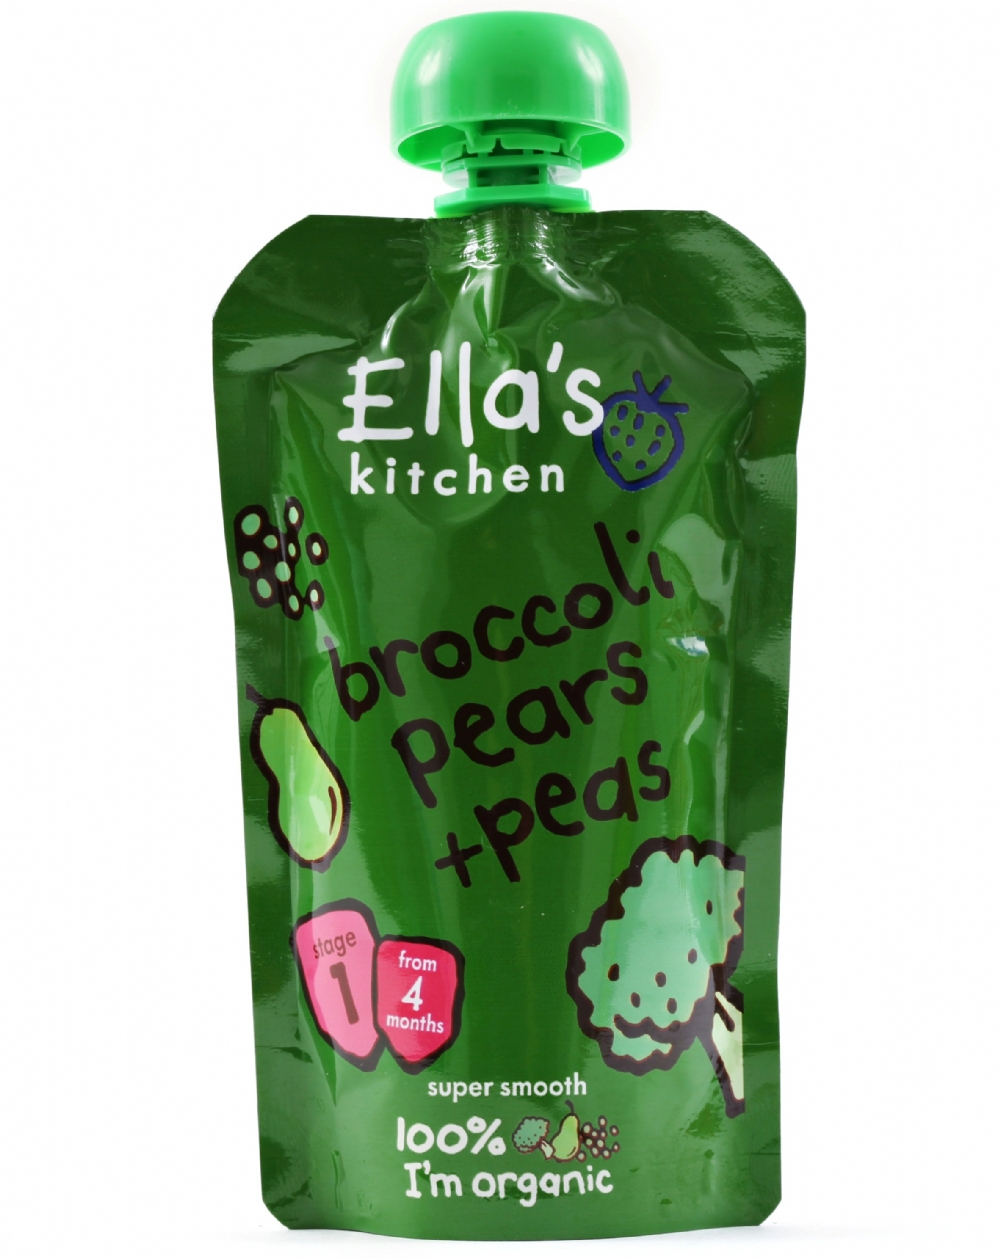 ELLA'S KITCHEN Broccoli, Pears & Peas 120g